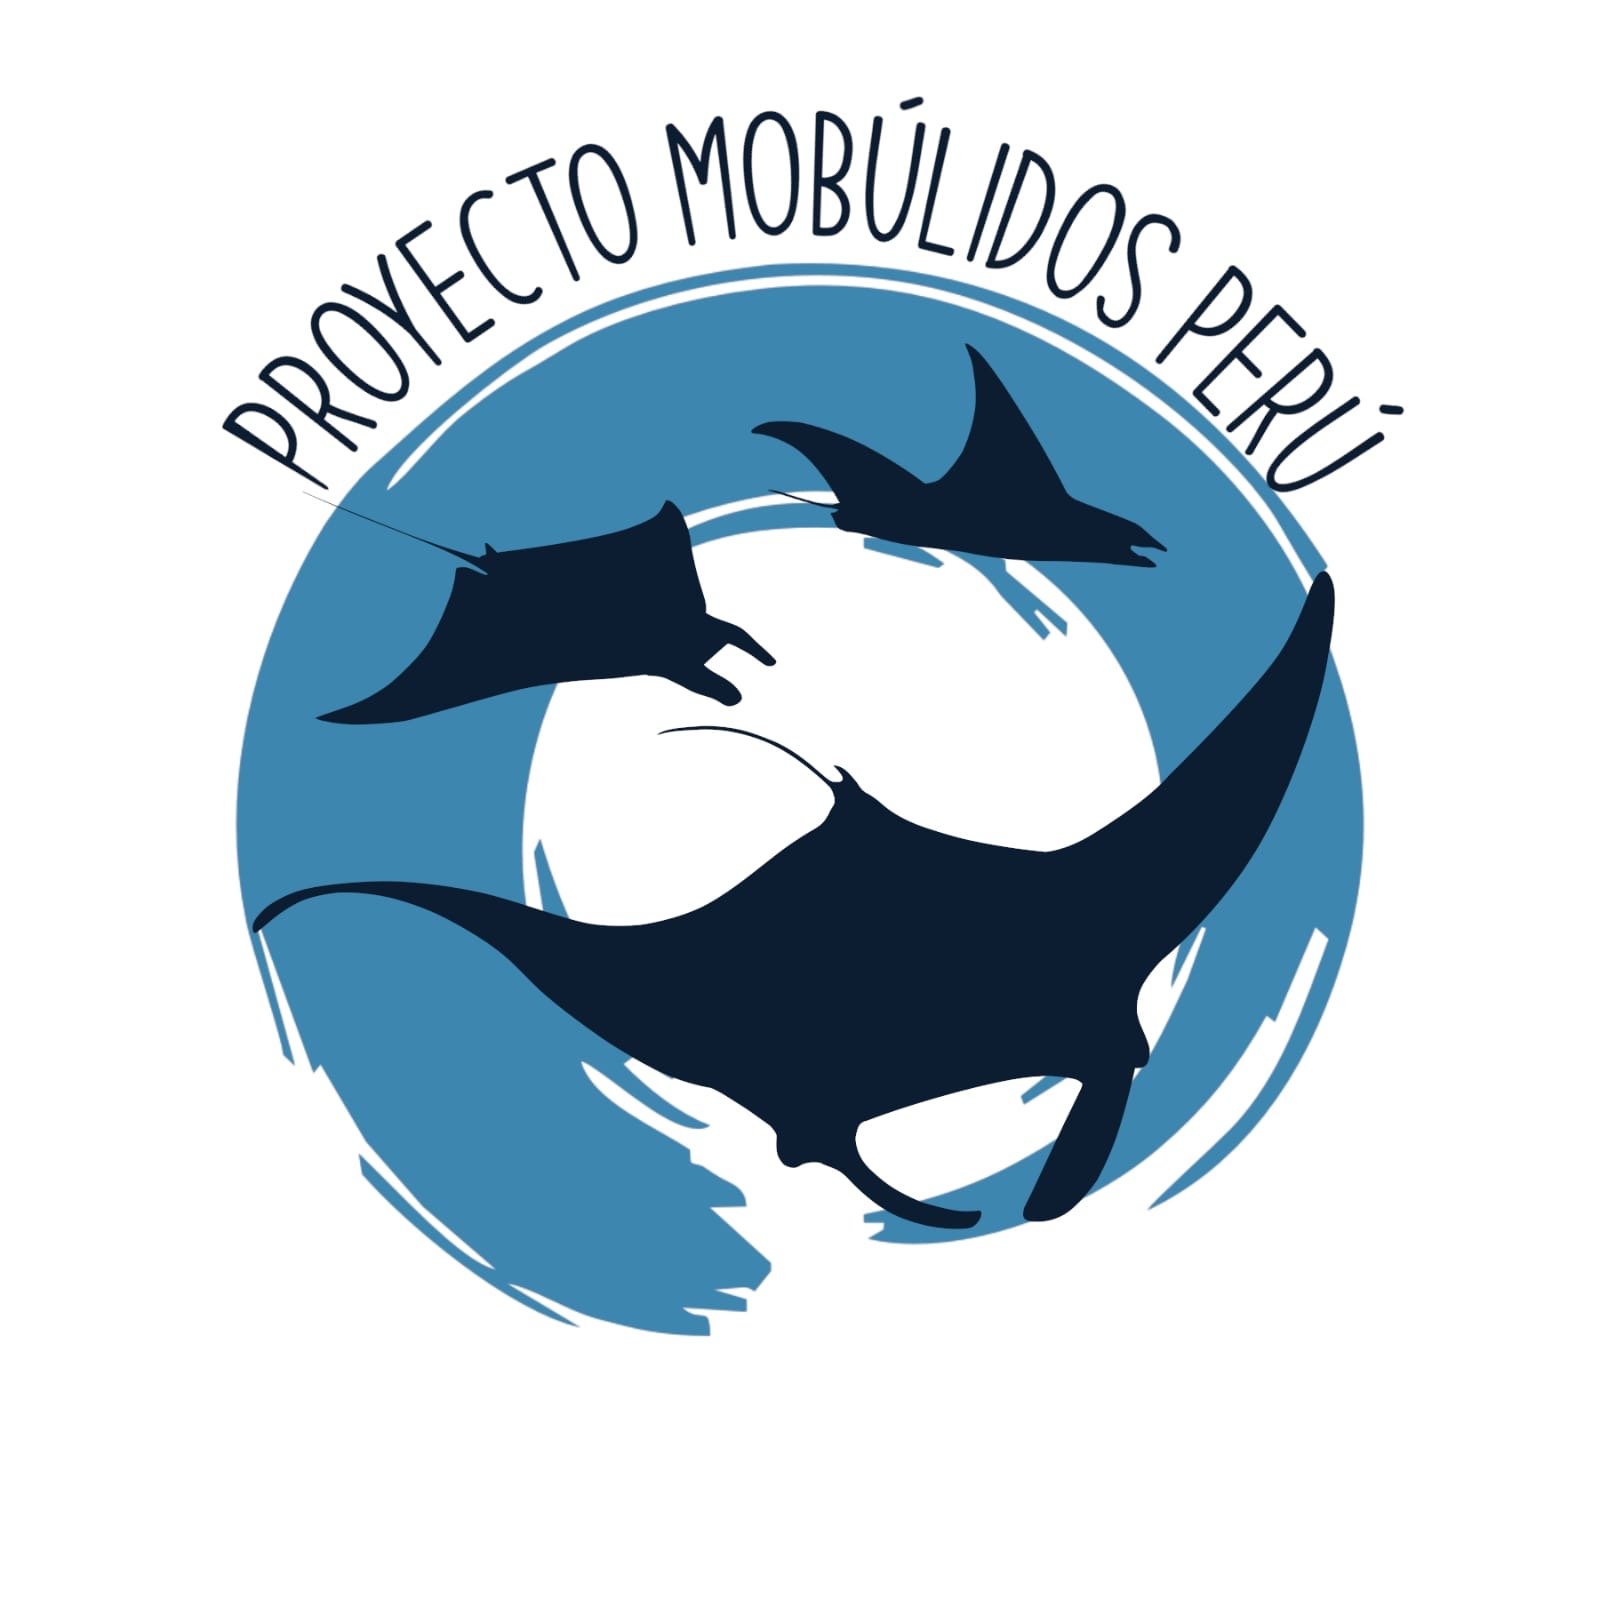 Peru Mobulid Project.JPG